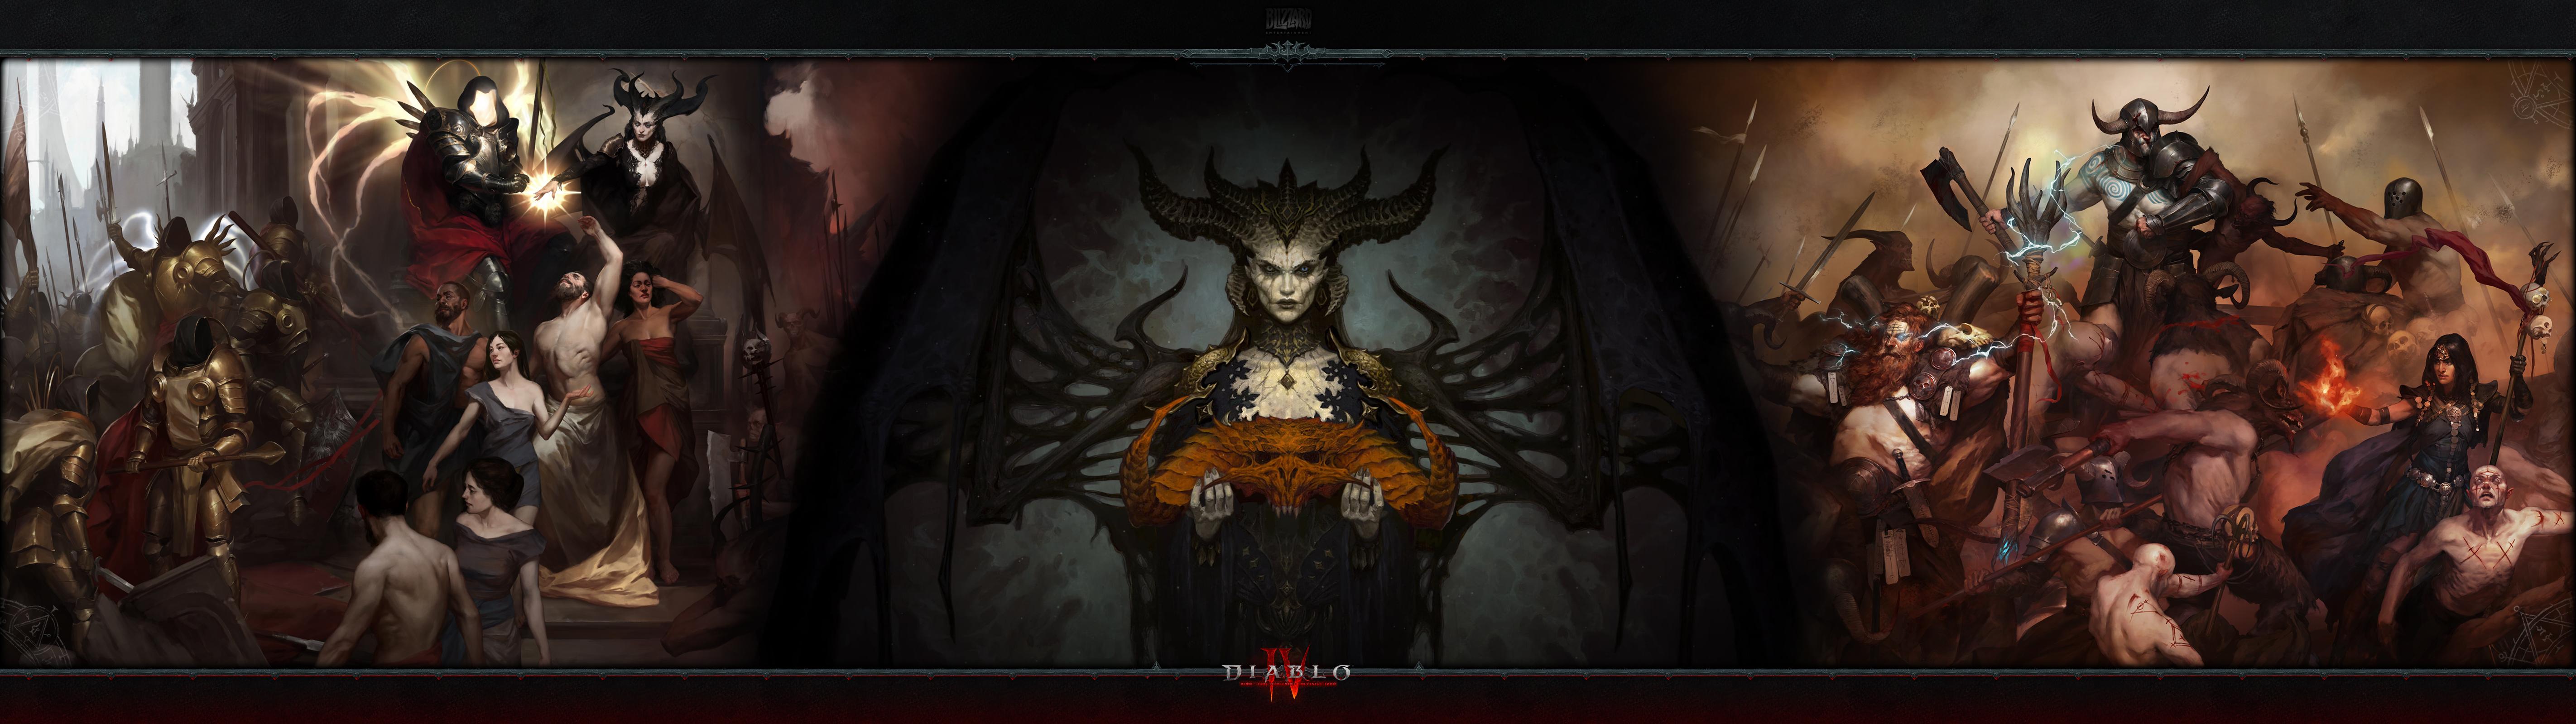 Diablo Iv Lilith Ultrawide By Holyknight3000